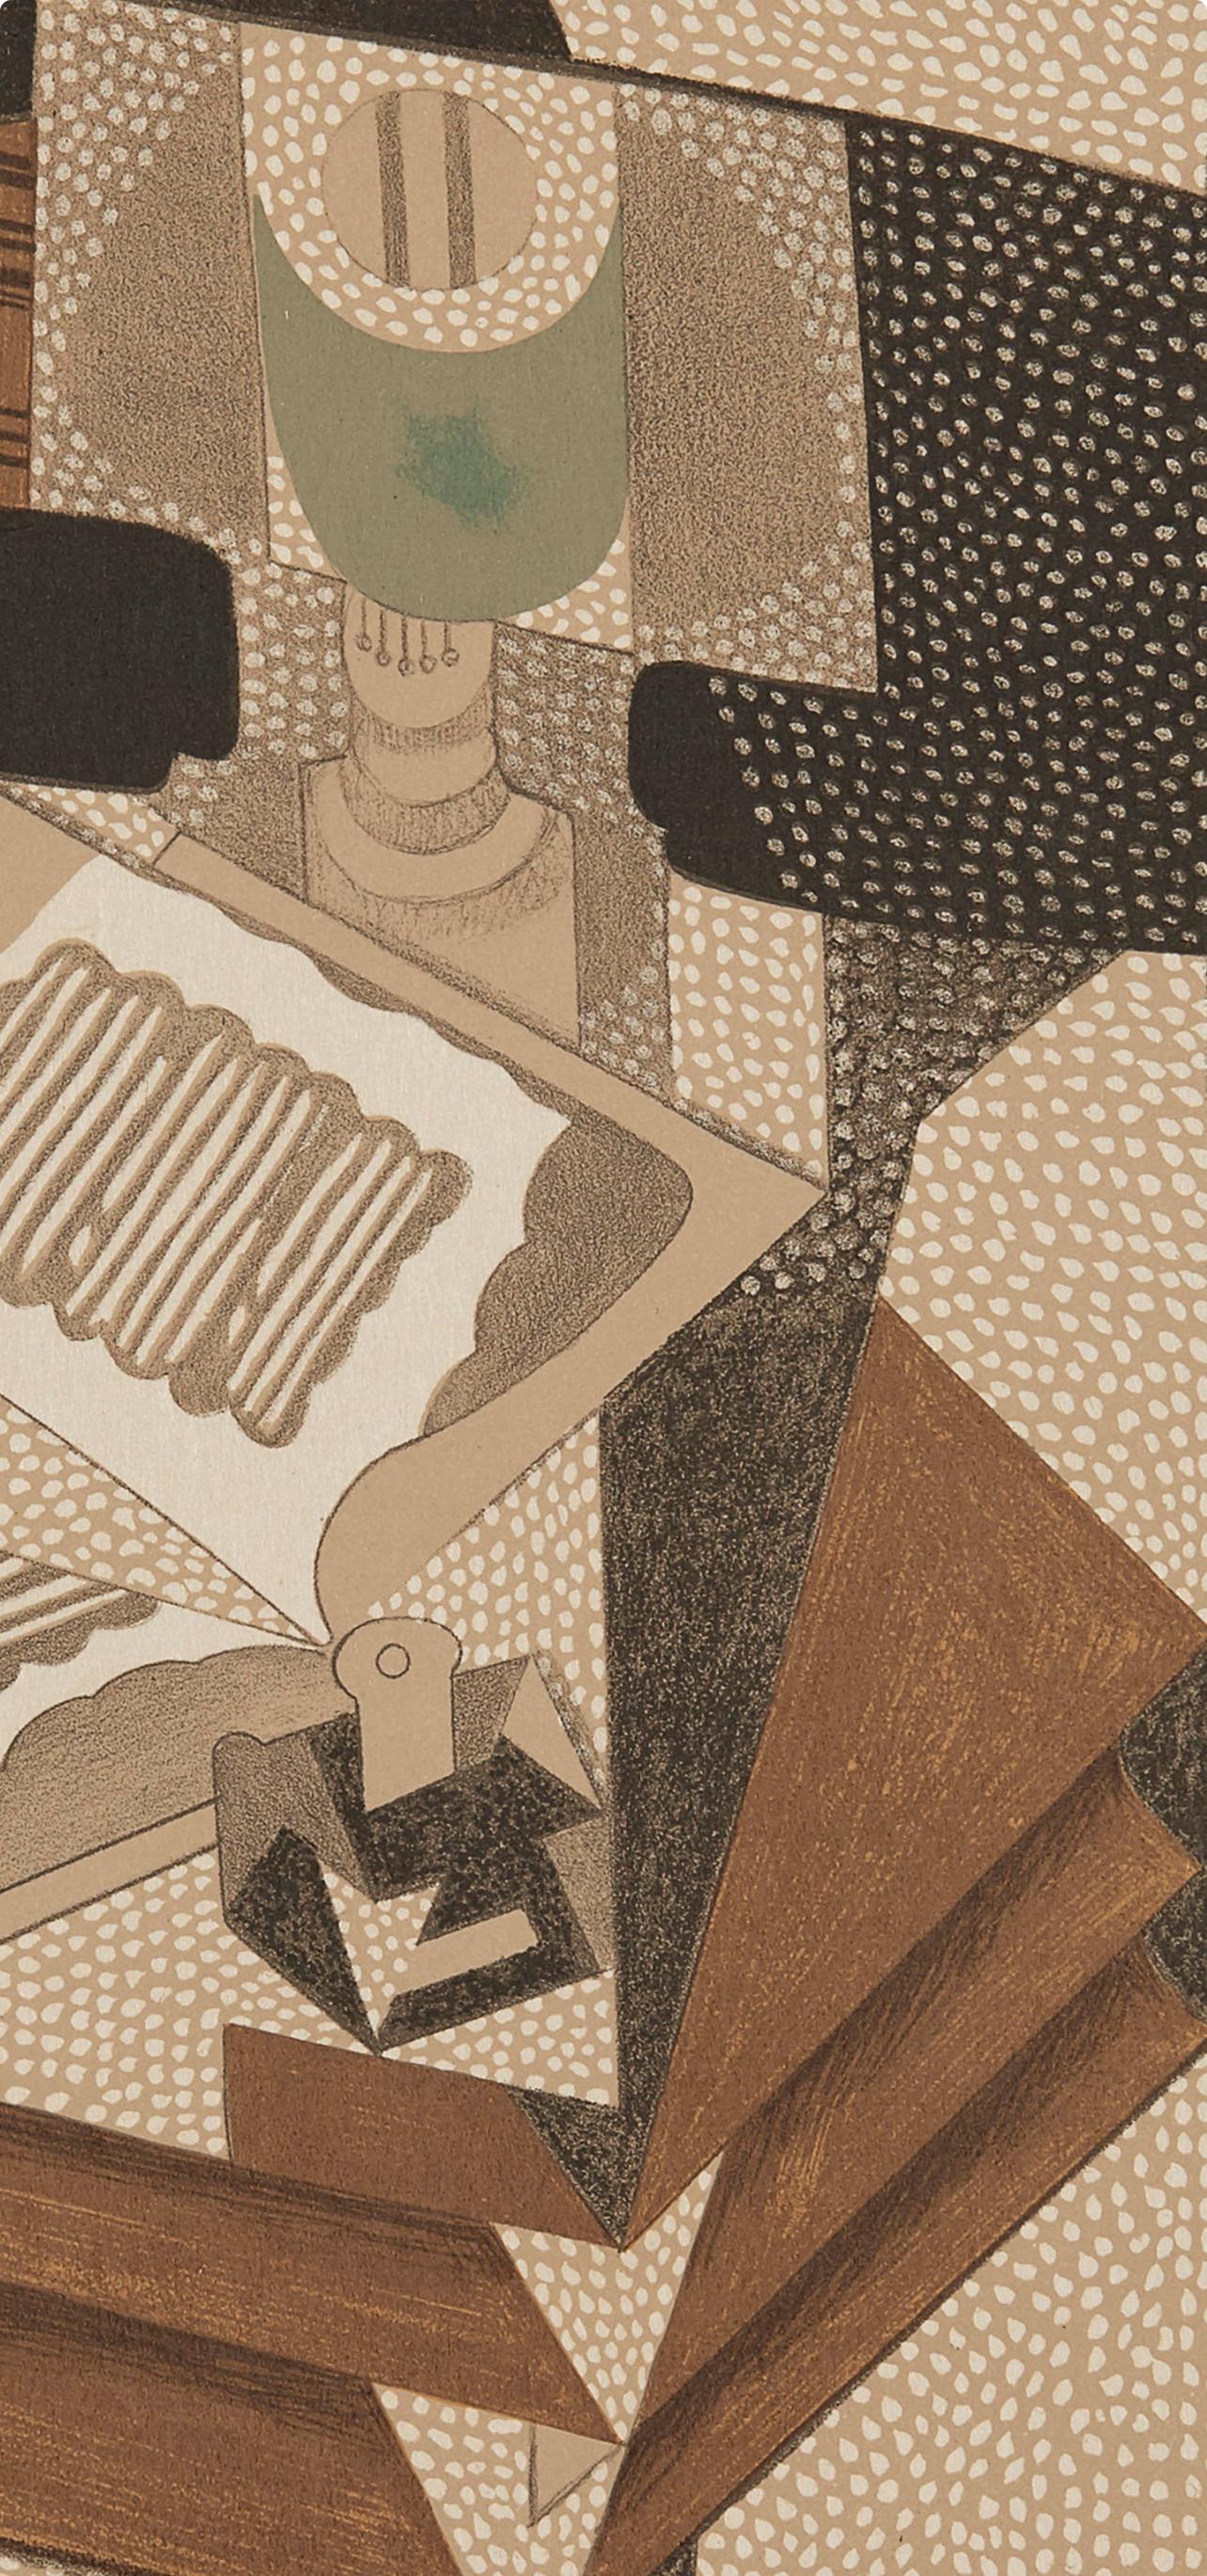 Gris, Le Livre (Kahnweiler 1969), Au Soleil du Plafond (nach) – Print von Juan Gris